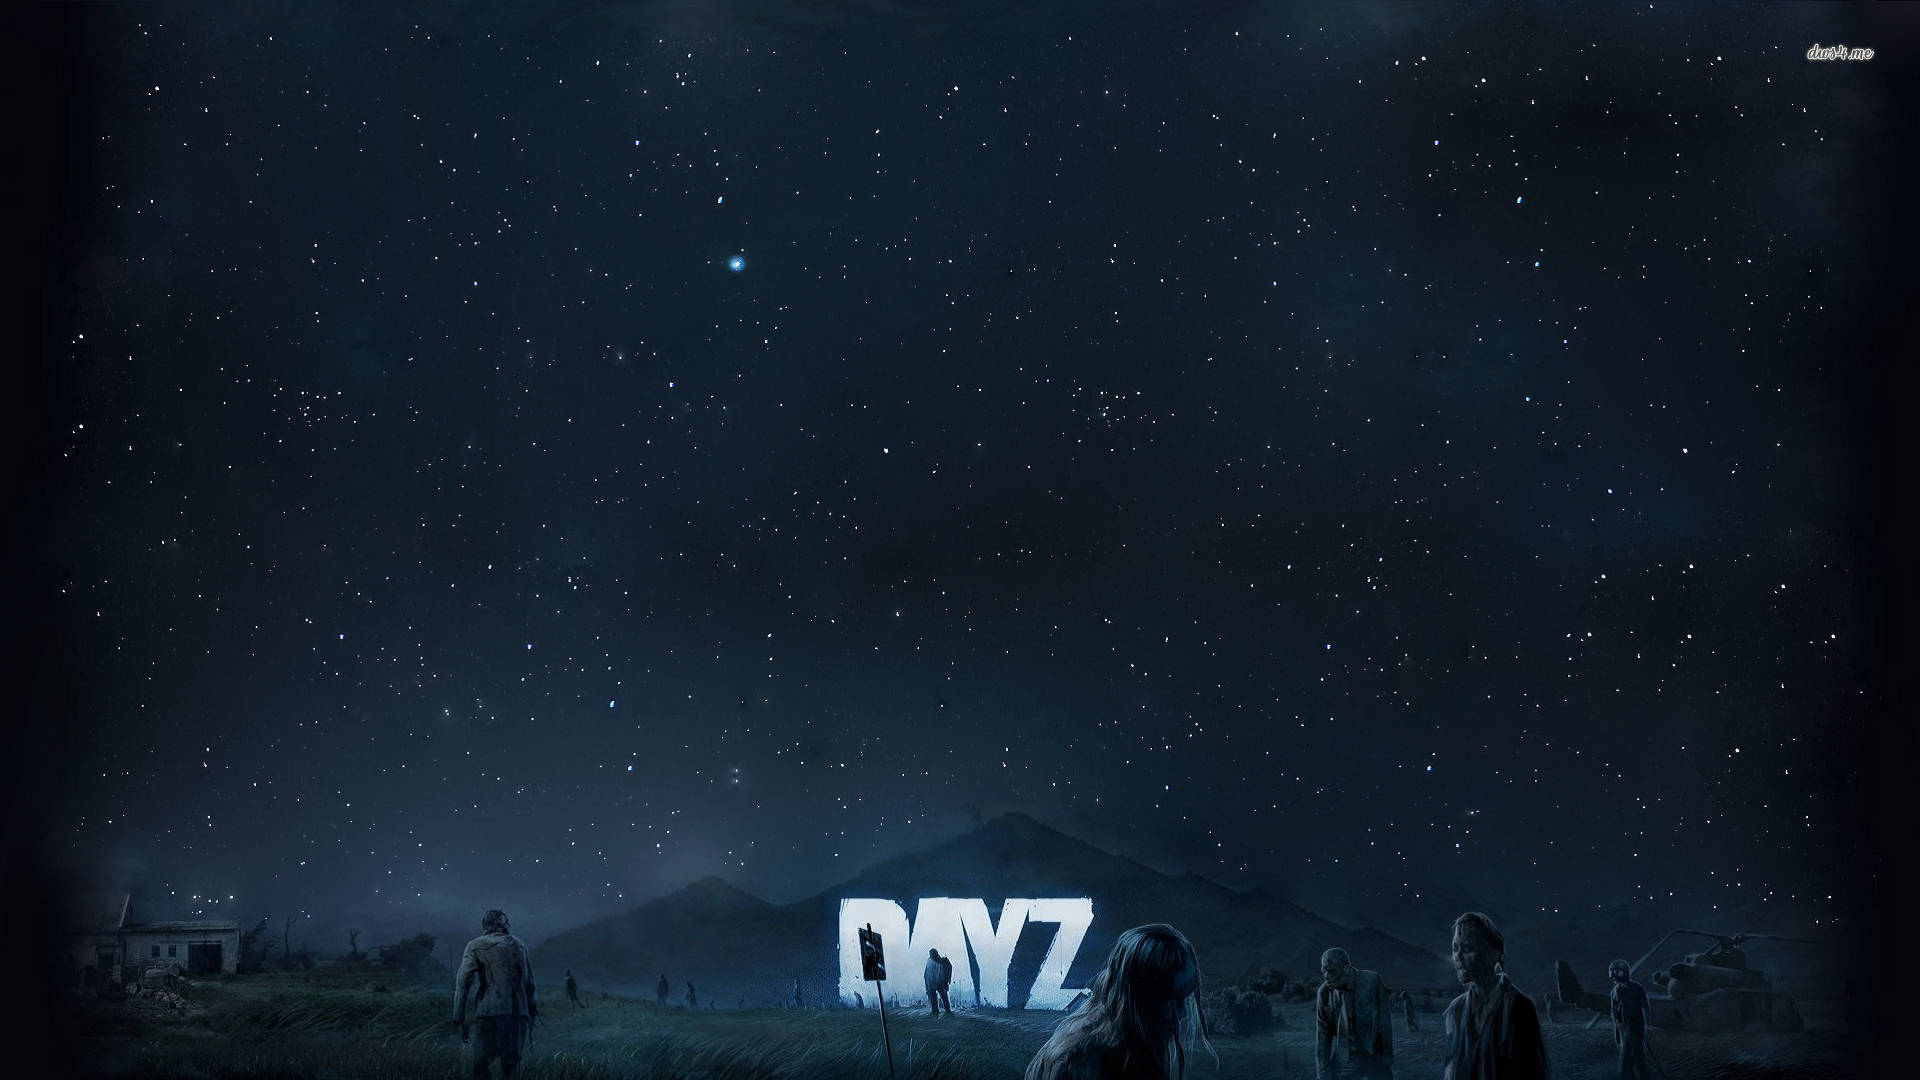 Dayz Starry Night Sky Background